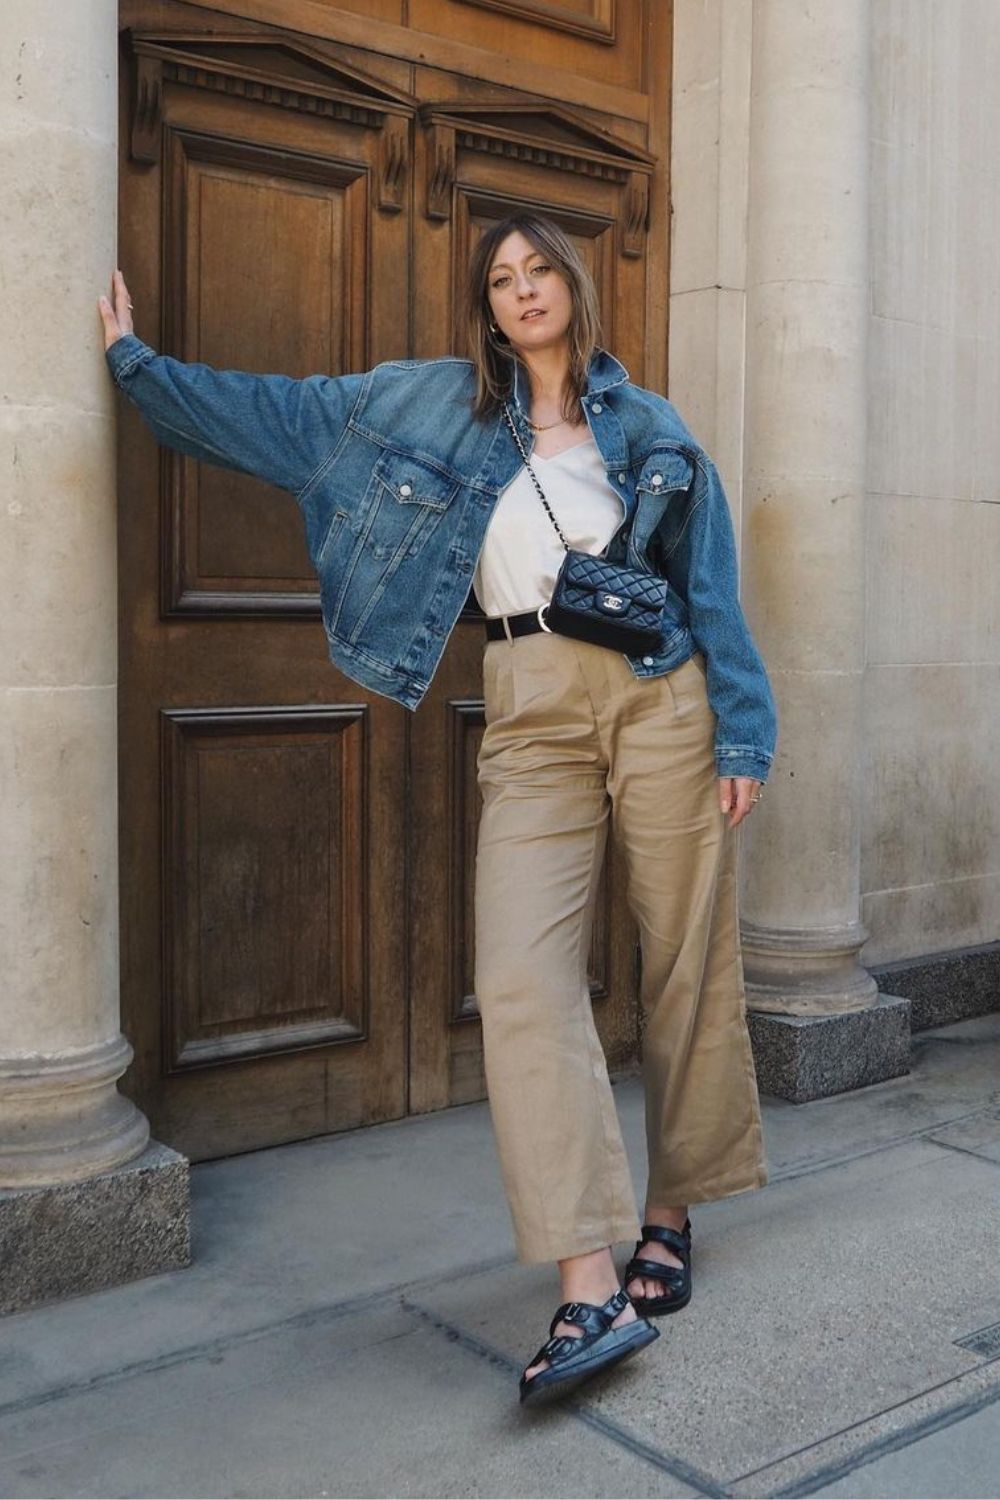 Jaqueta jeans, calça caqui, papete e bolsa transversal